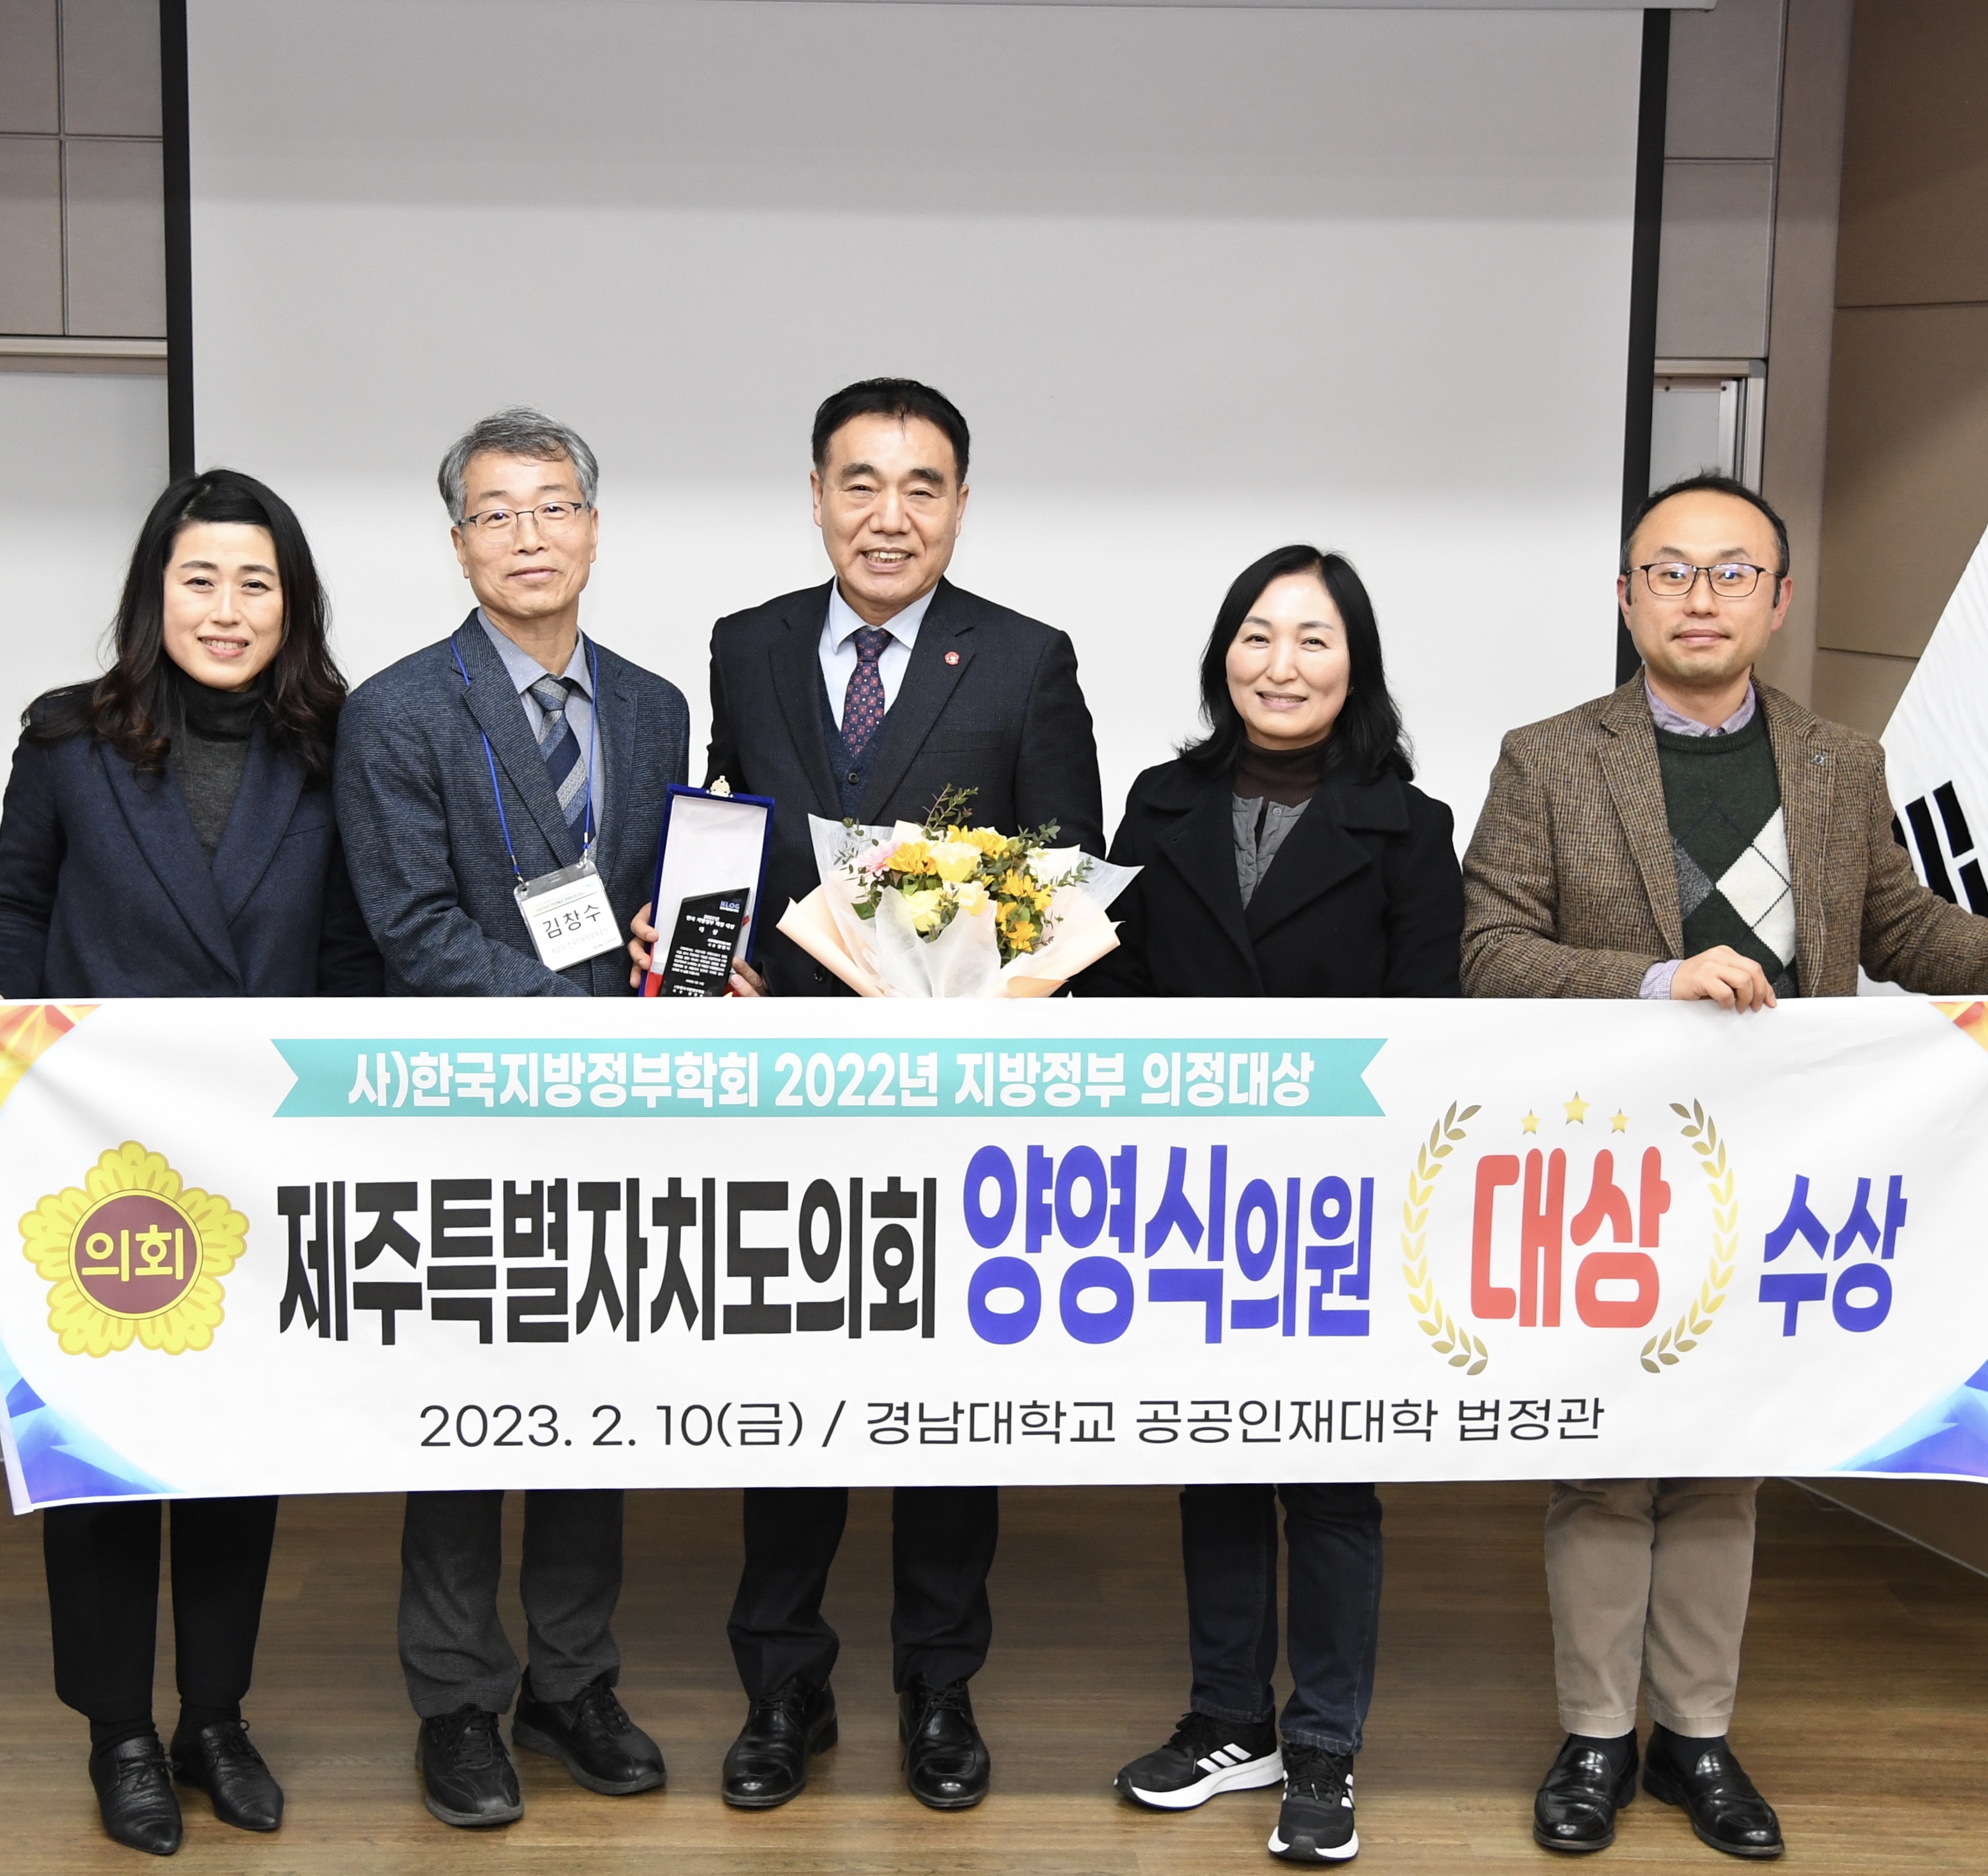 사)한국지방정부학회 선정, 2022년 지방정부 의정대상 - 양영식 의원, ‘대상’ 수상